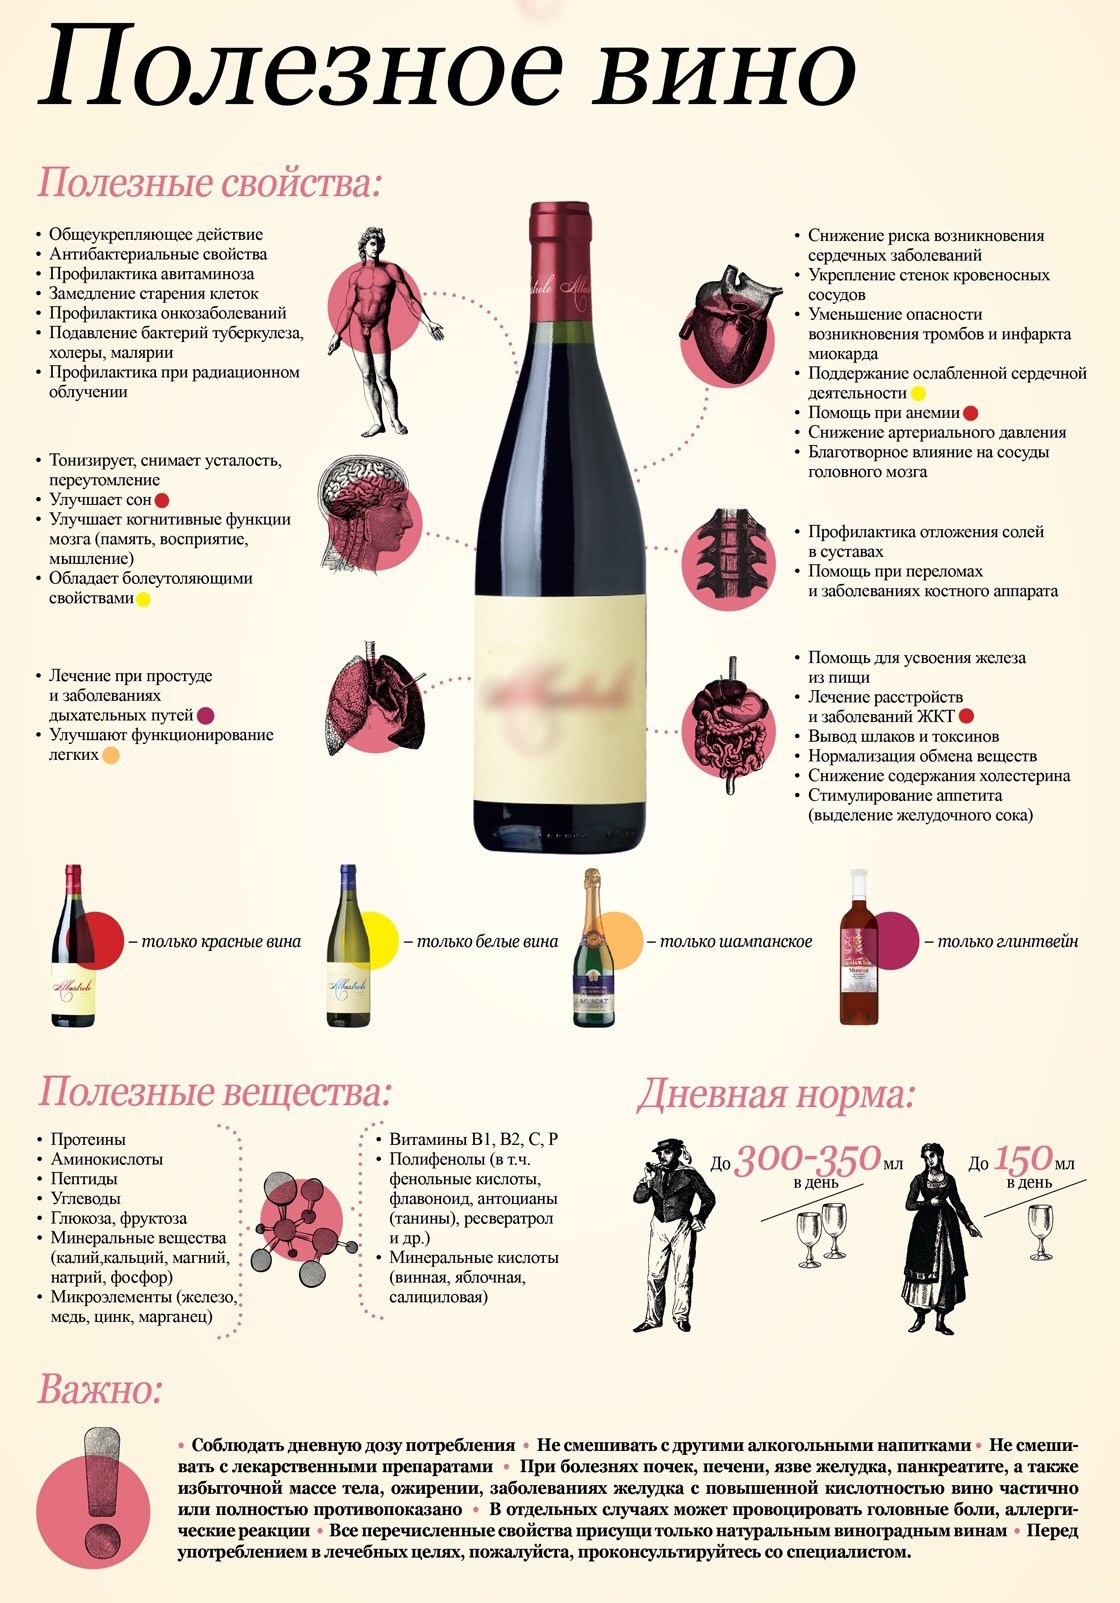 Домашнее вино из винограда: простой рецепт